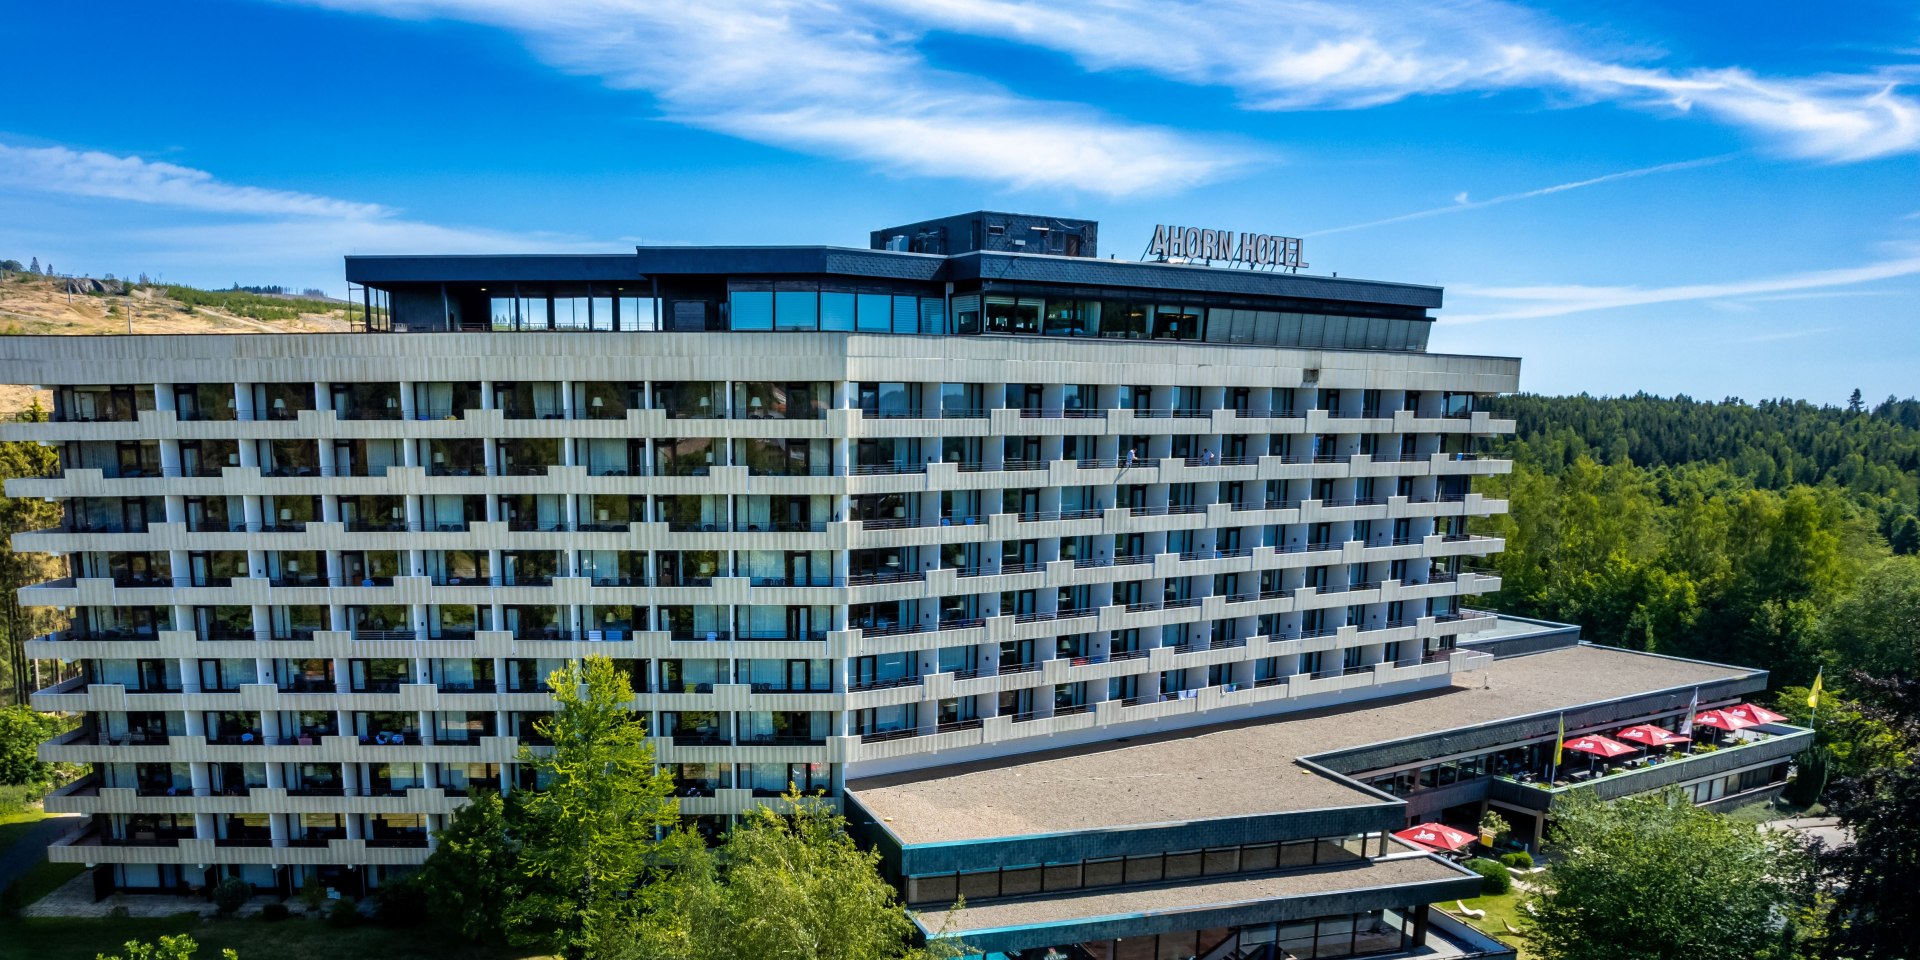 Außenansicht Hotel im Sommer, © AHORN Hotel Braunlage Betriebs GmbH